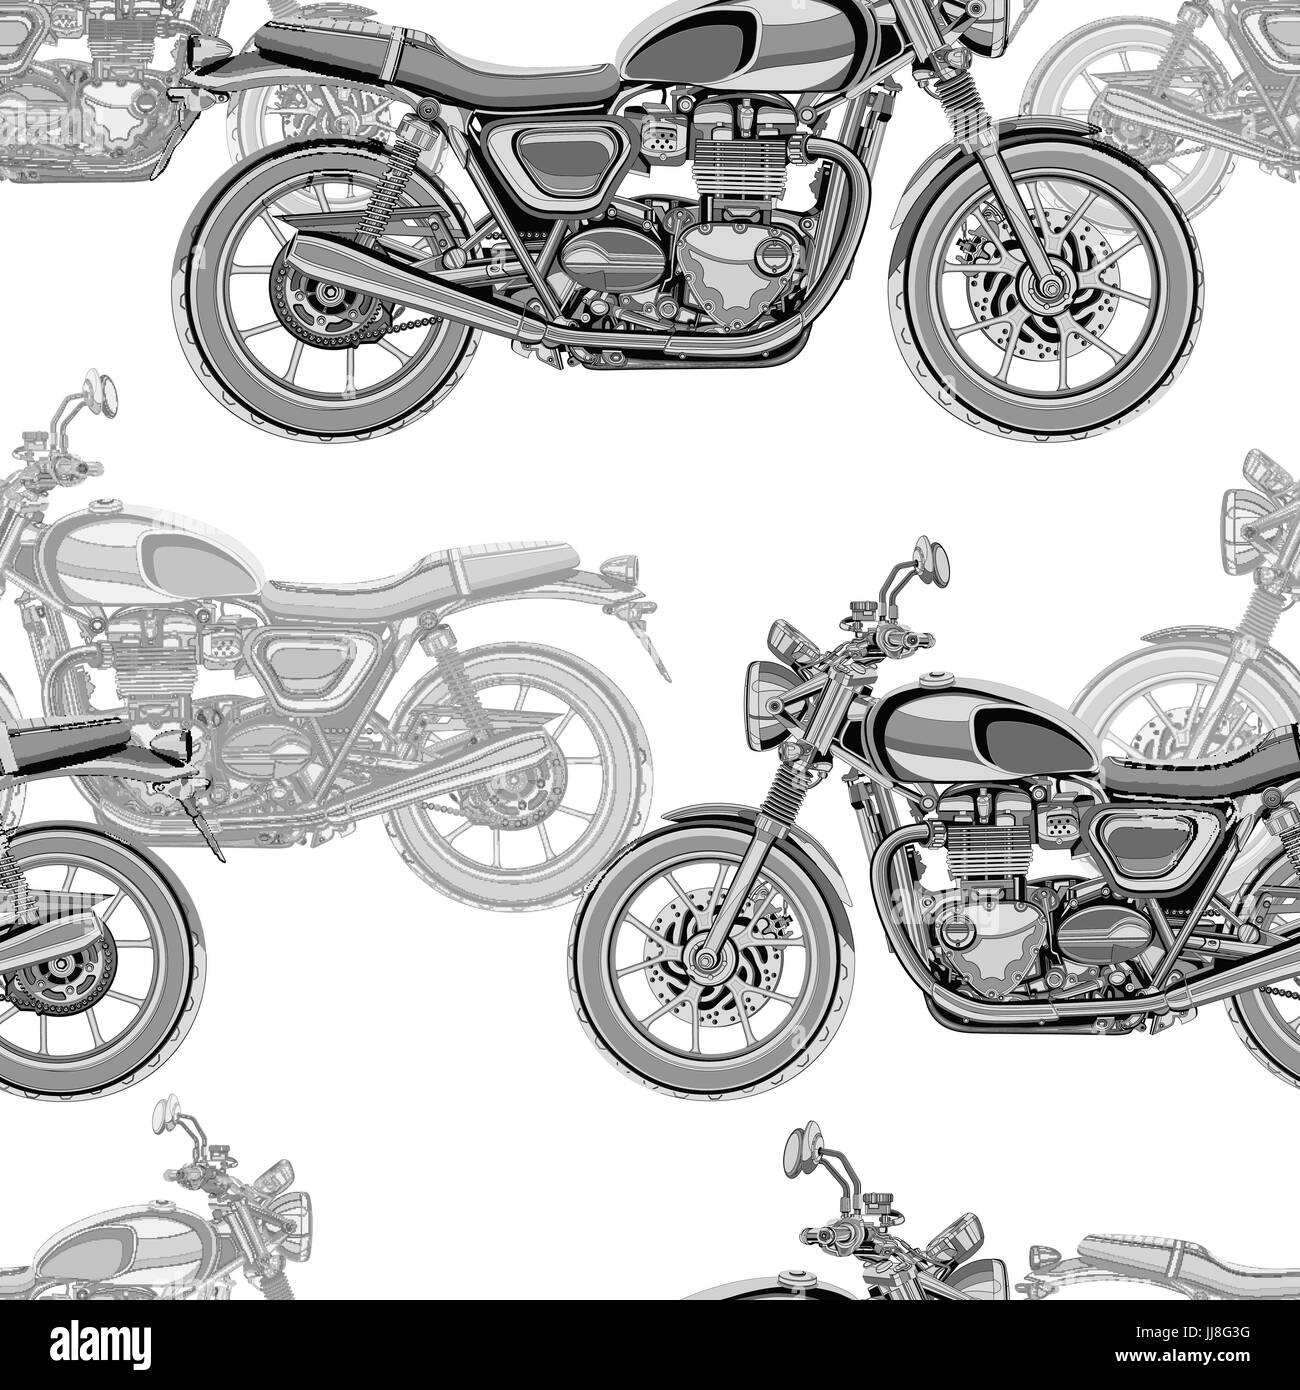 Motorrad Musterdesign, Vektor Hintergrund. Monochrome Darstellung. Schwarz / weiß-Motorräder mit vielen Details auf einem weißen Hintergrund. Für Tapetendesign, Stoff, Wrapper Stock Vektor